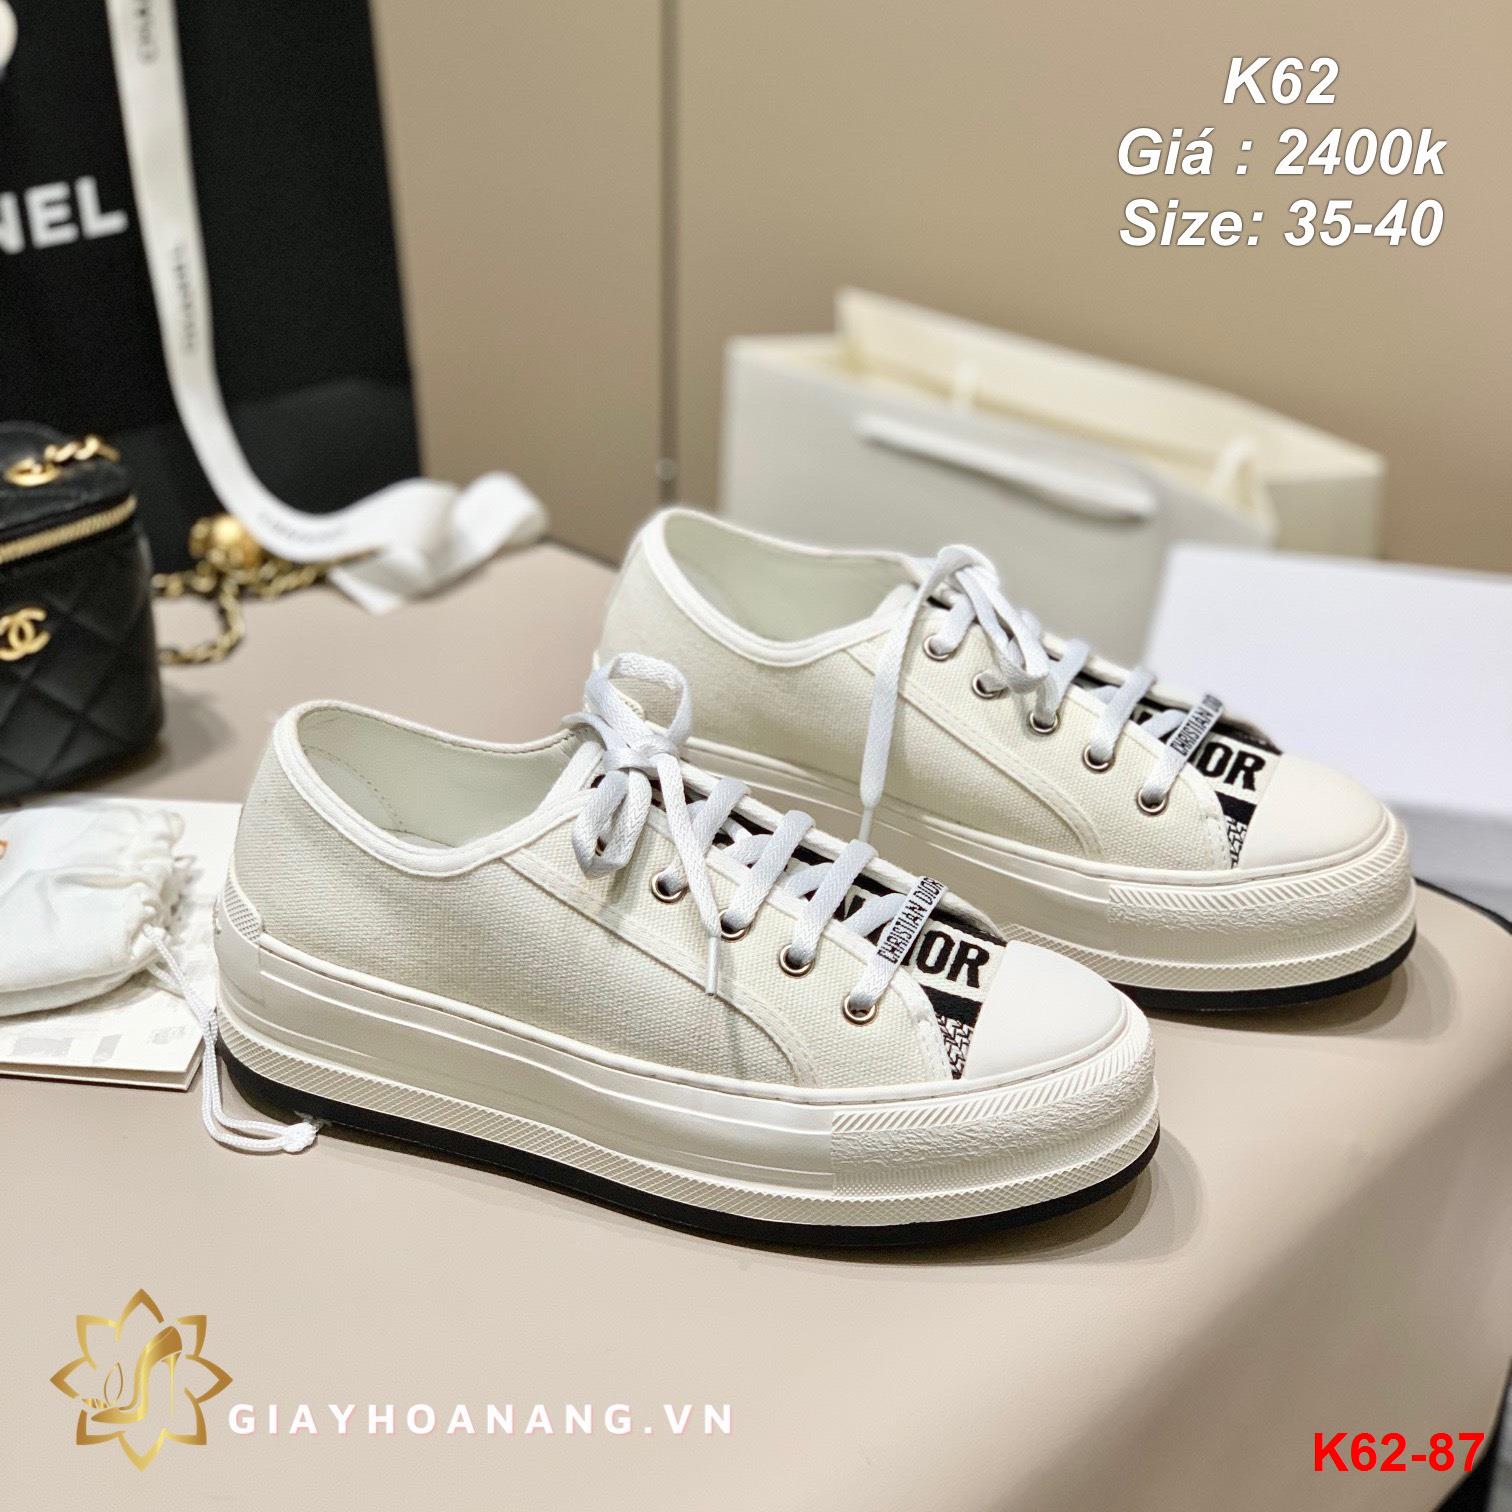 K62-87 Dior giày thể thao siêu cấp